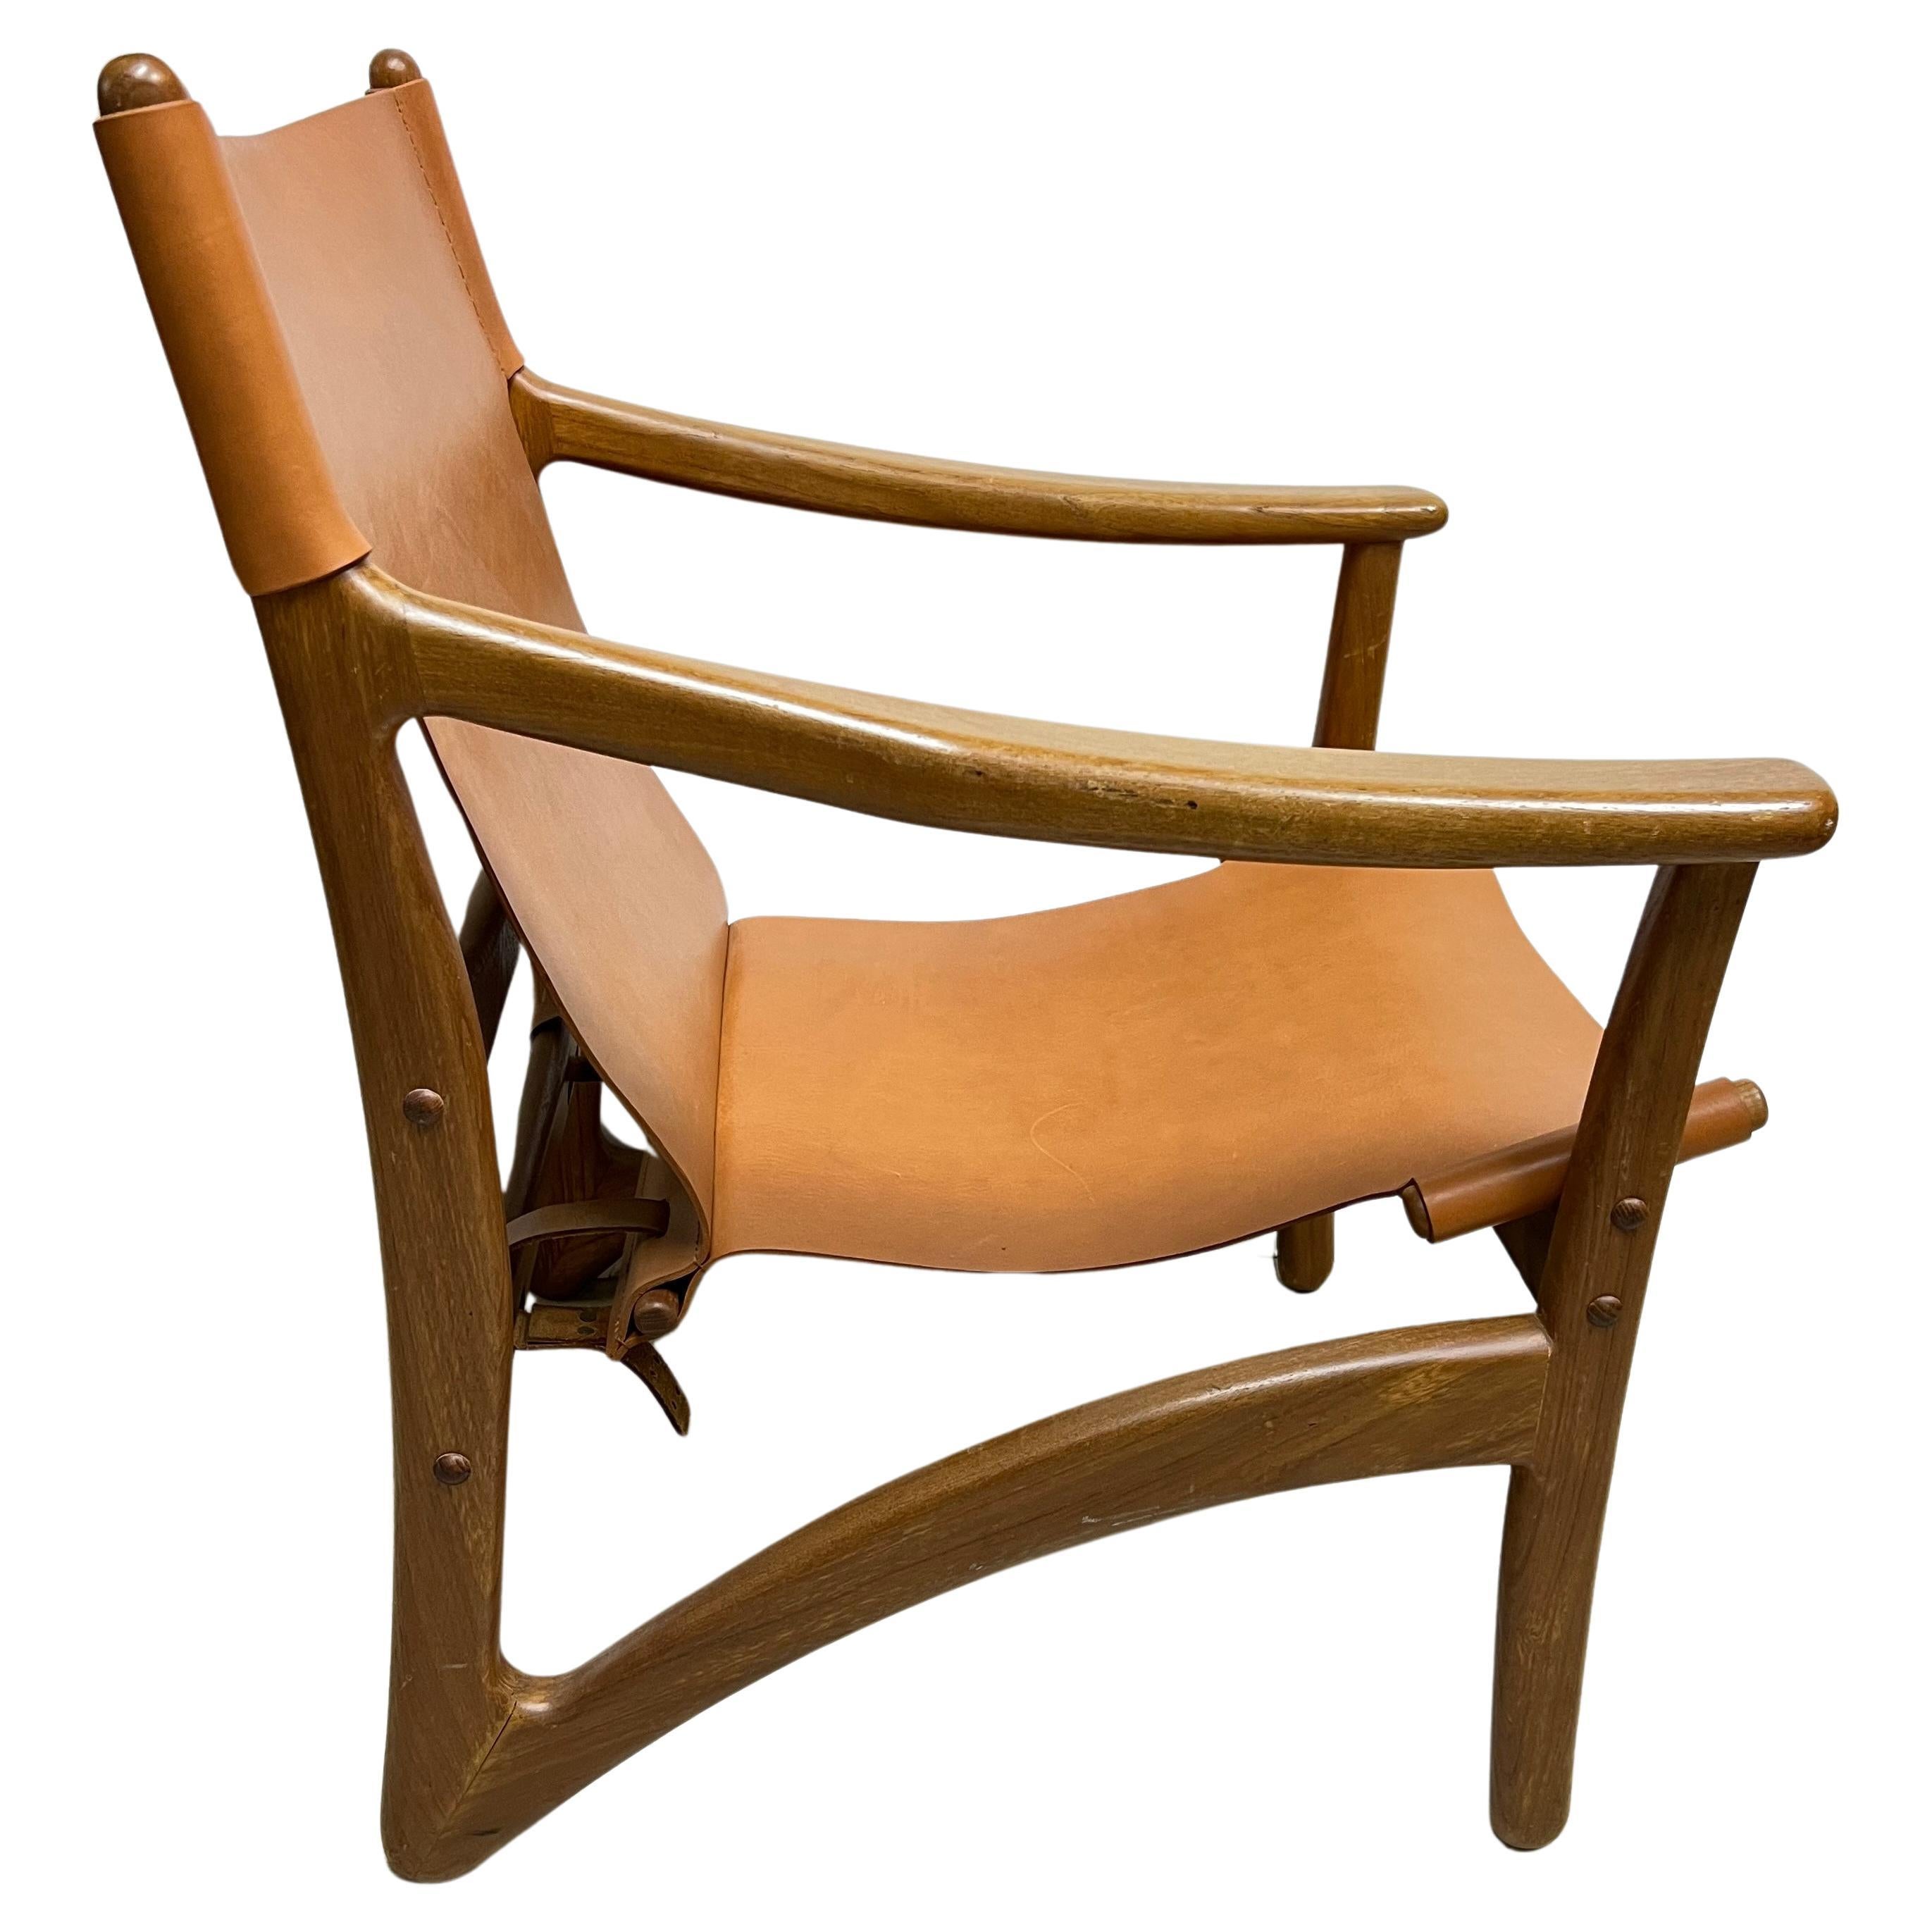 Scandinavian Modern Arne Vodder for Kircodan Danish Teak and Cognac Leather Lounge Chair 1950s For Sale